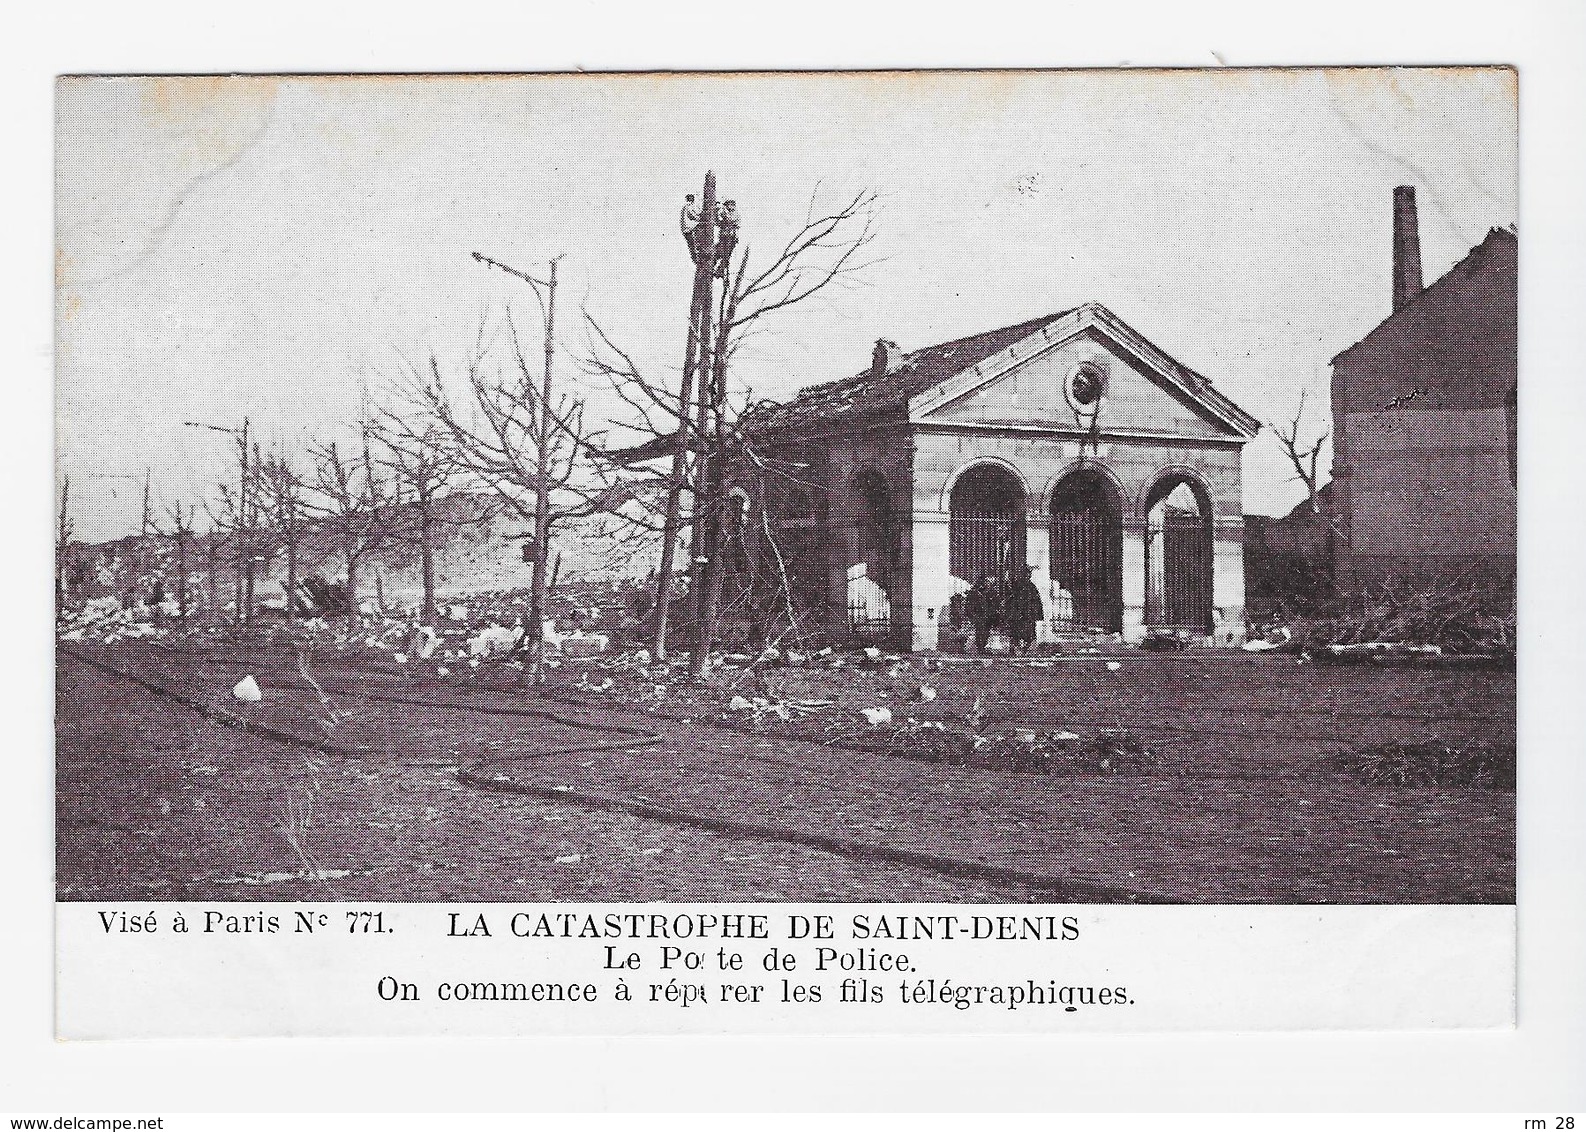 Saint-Denis : lot de 41 CPA (1905 à 1916, ABE et BE) voir les 42 scans et le descriptif